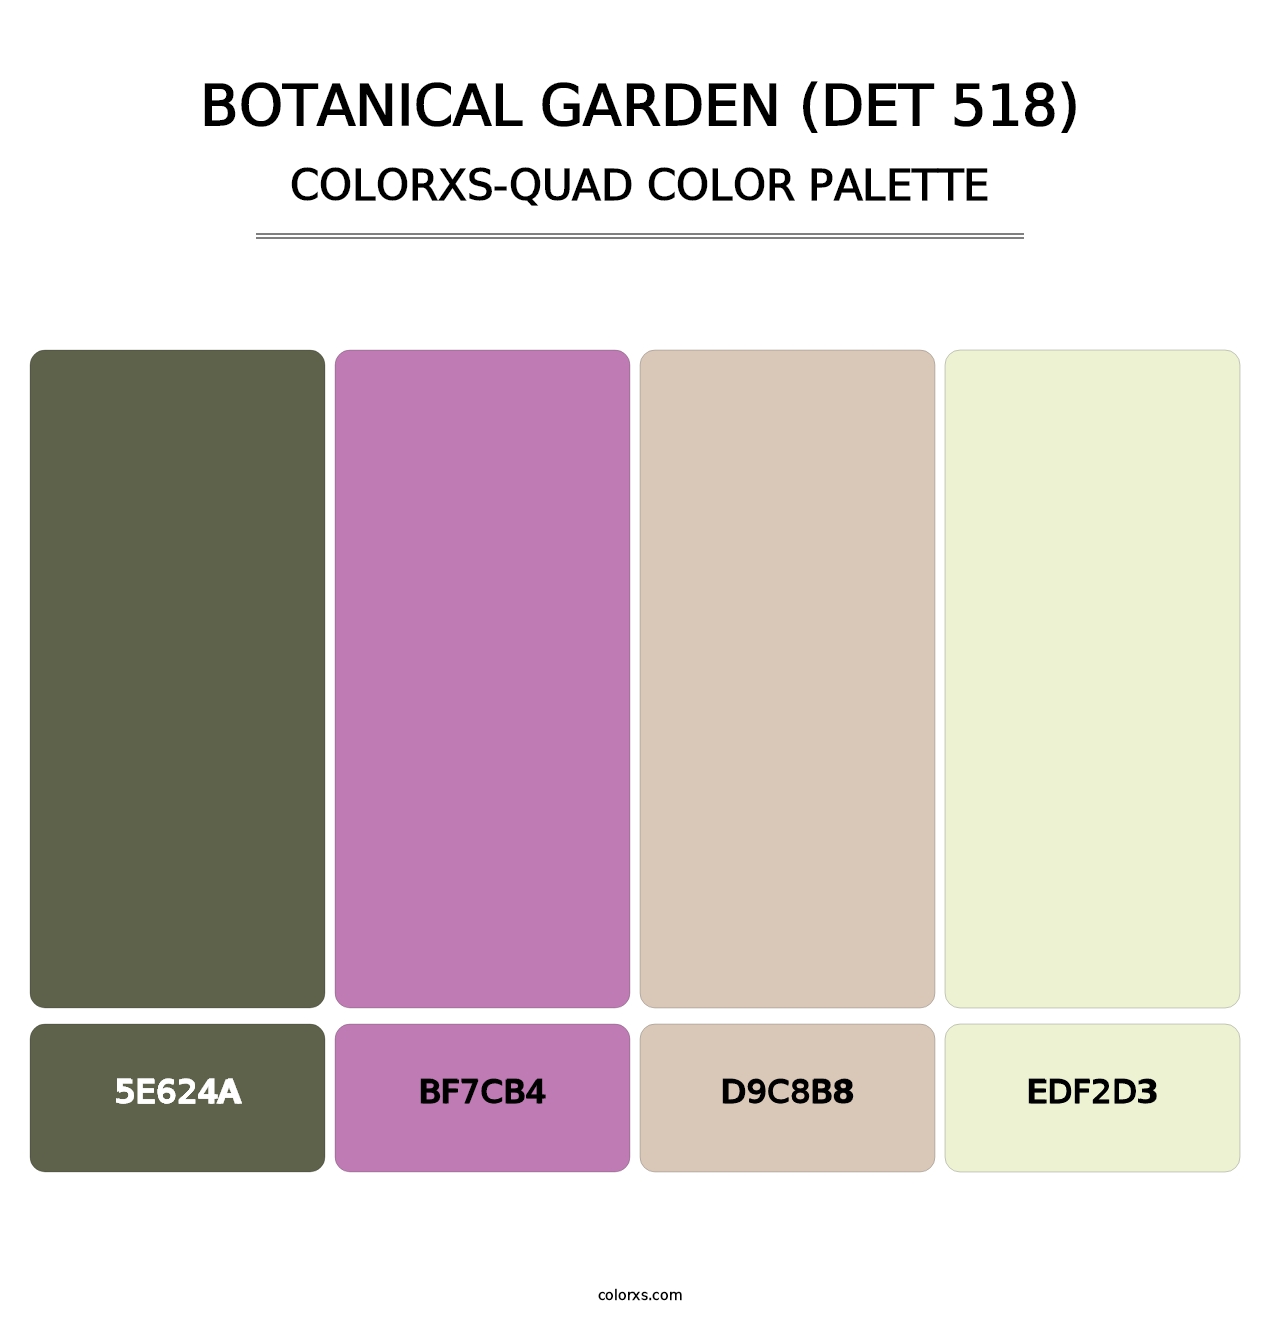 Botanical Garden (DET 518) - Colorxs Quad Palette